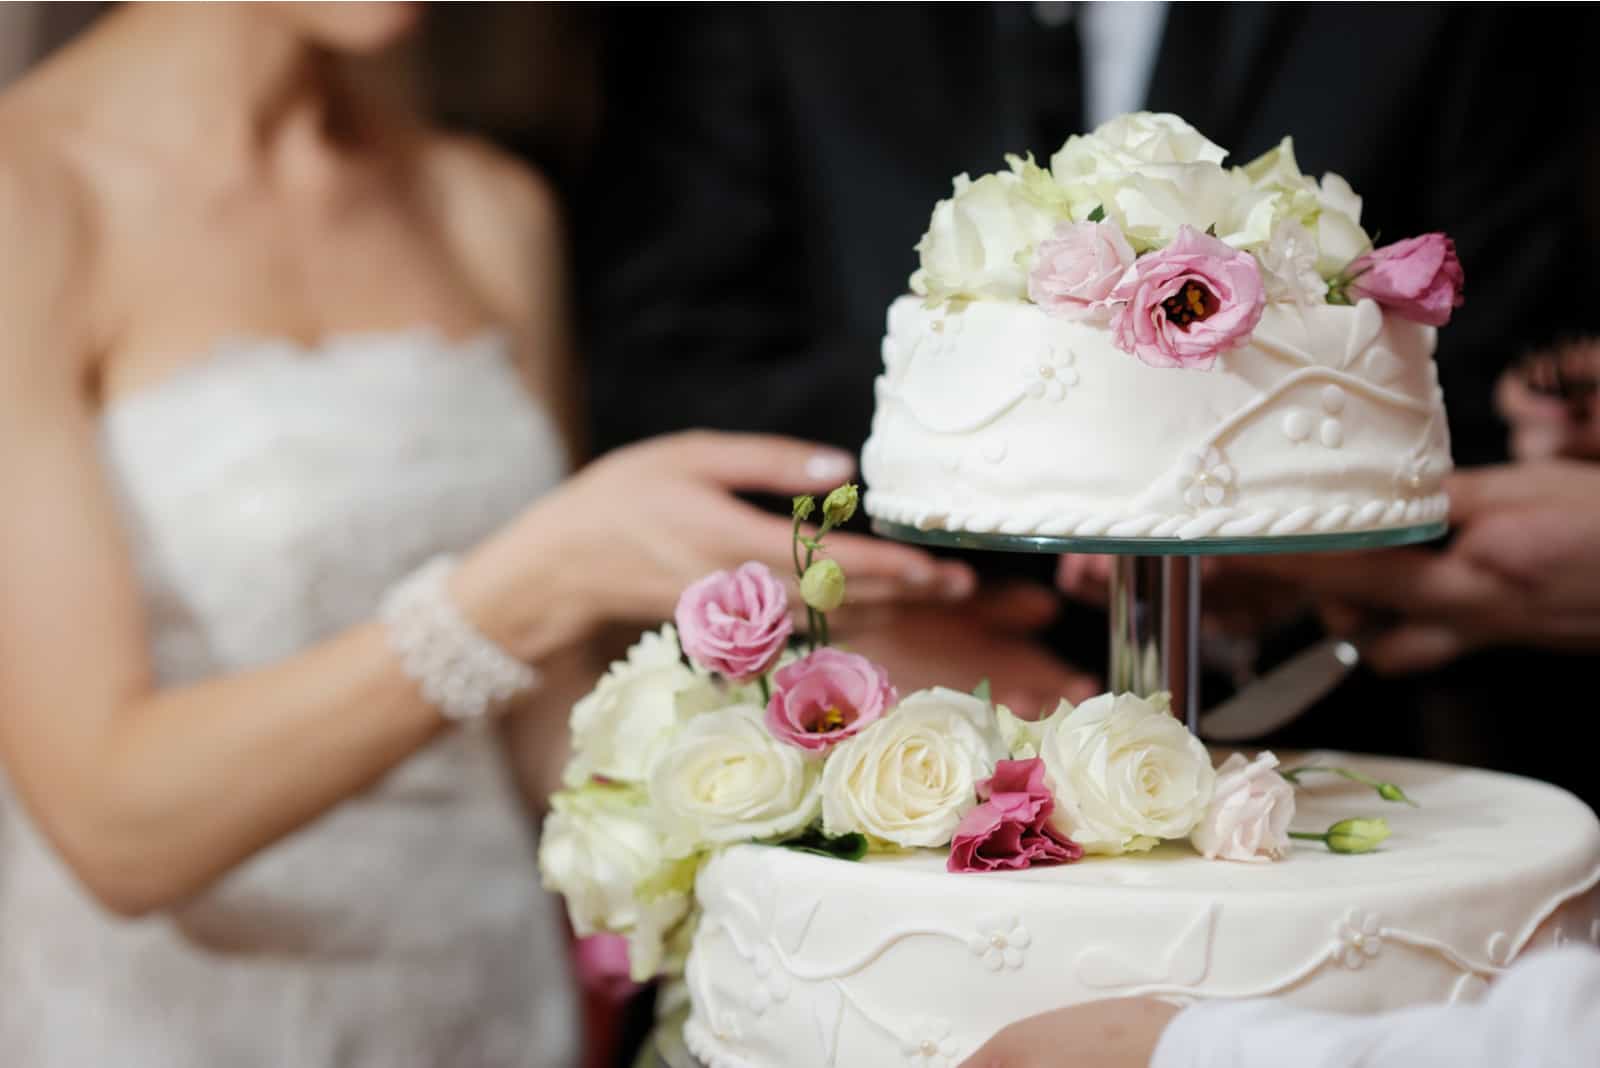 Eine Braut und ein Bräutigam schneiden ihre Hochzeitstorte